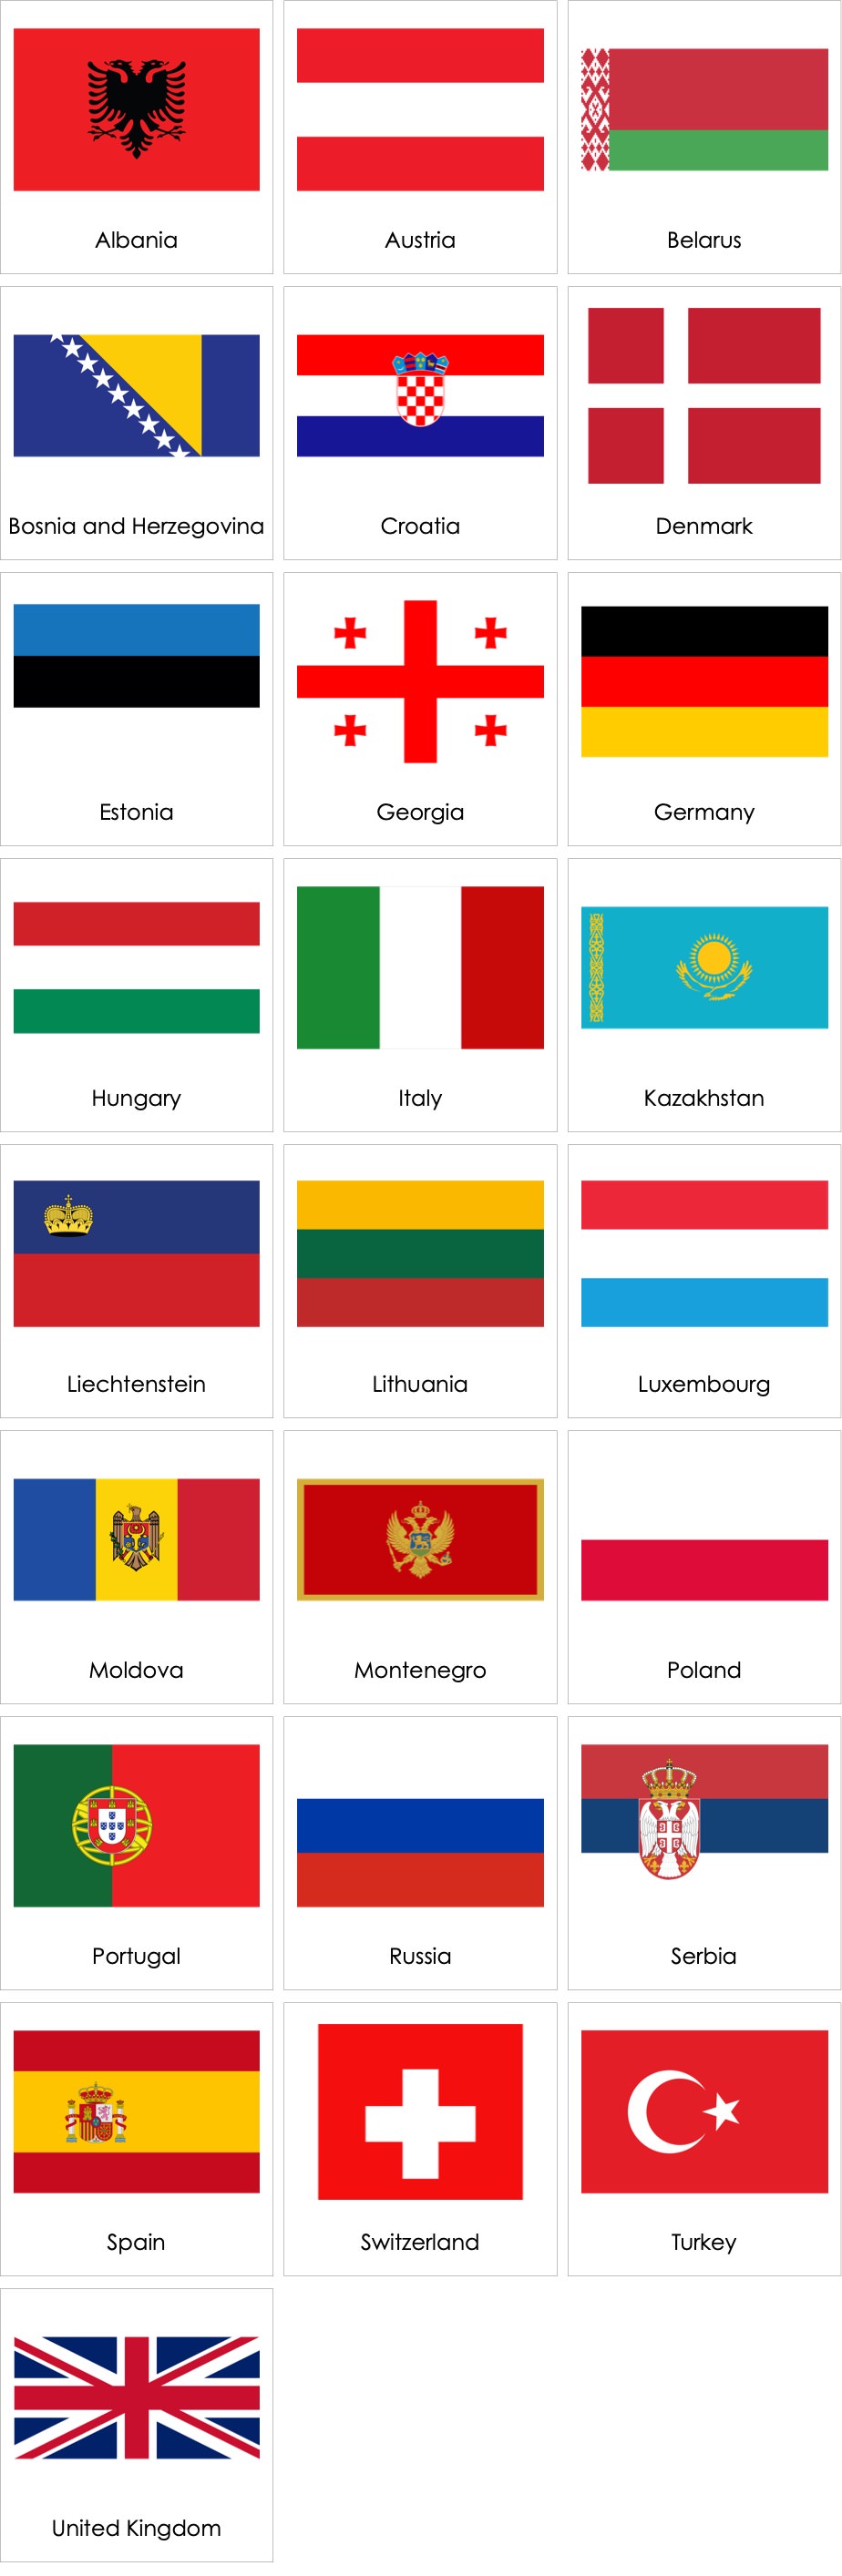 flags-of-european-countries-01-ami-digital